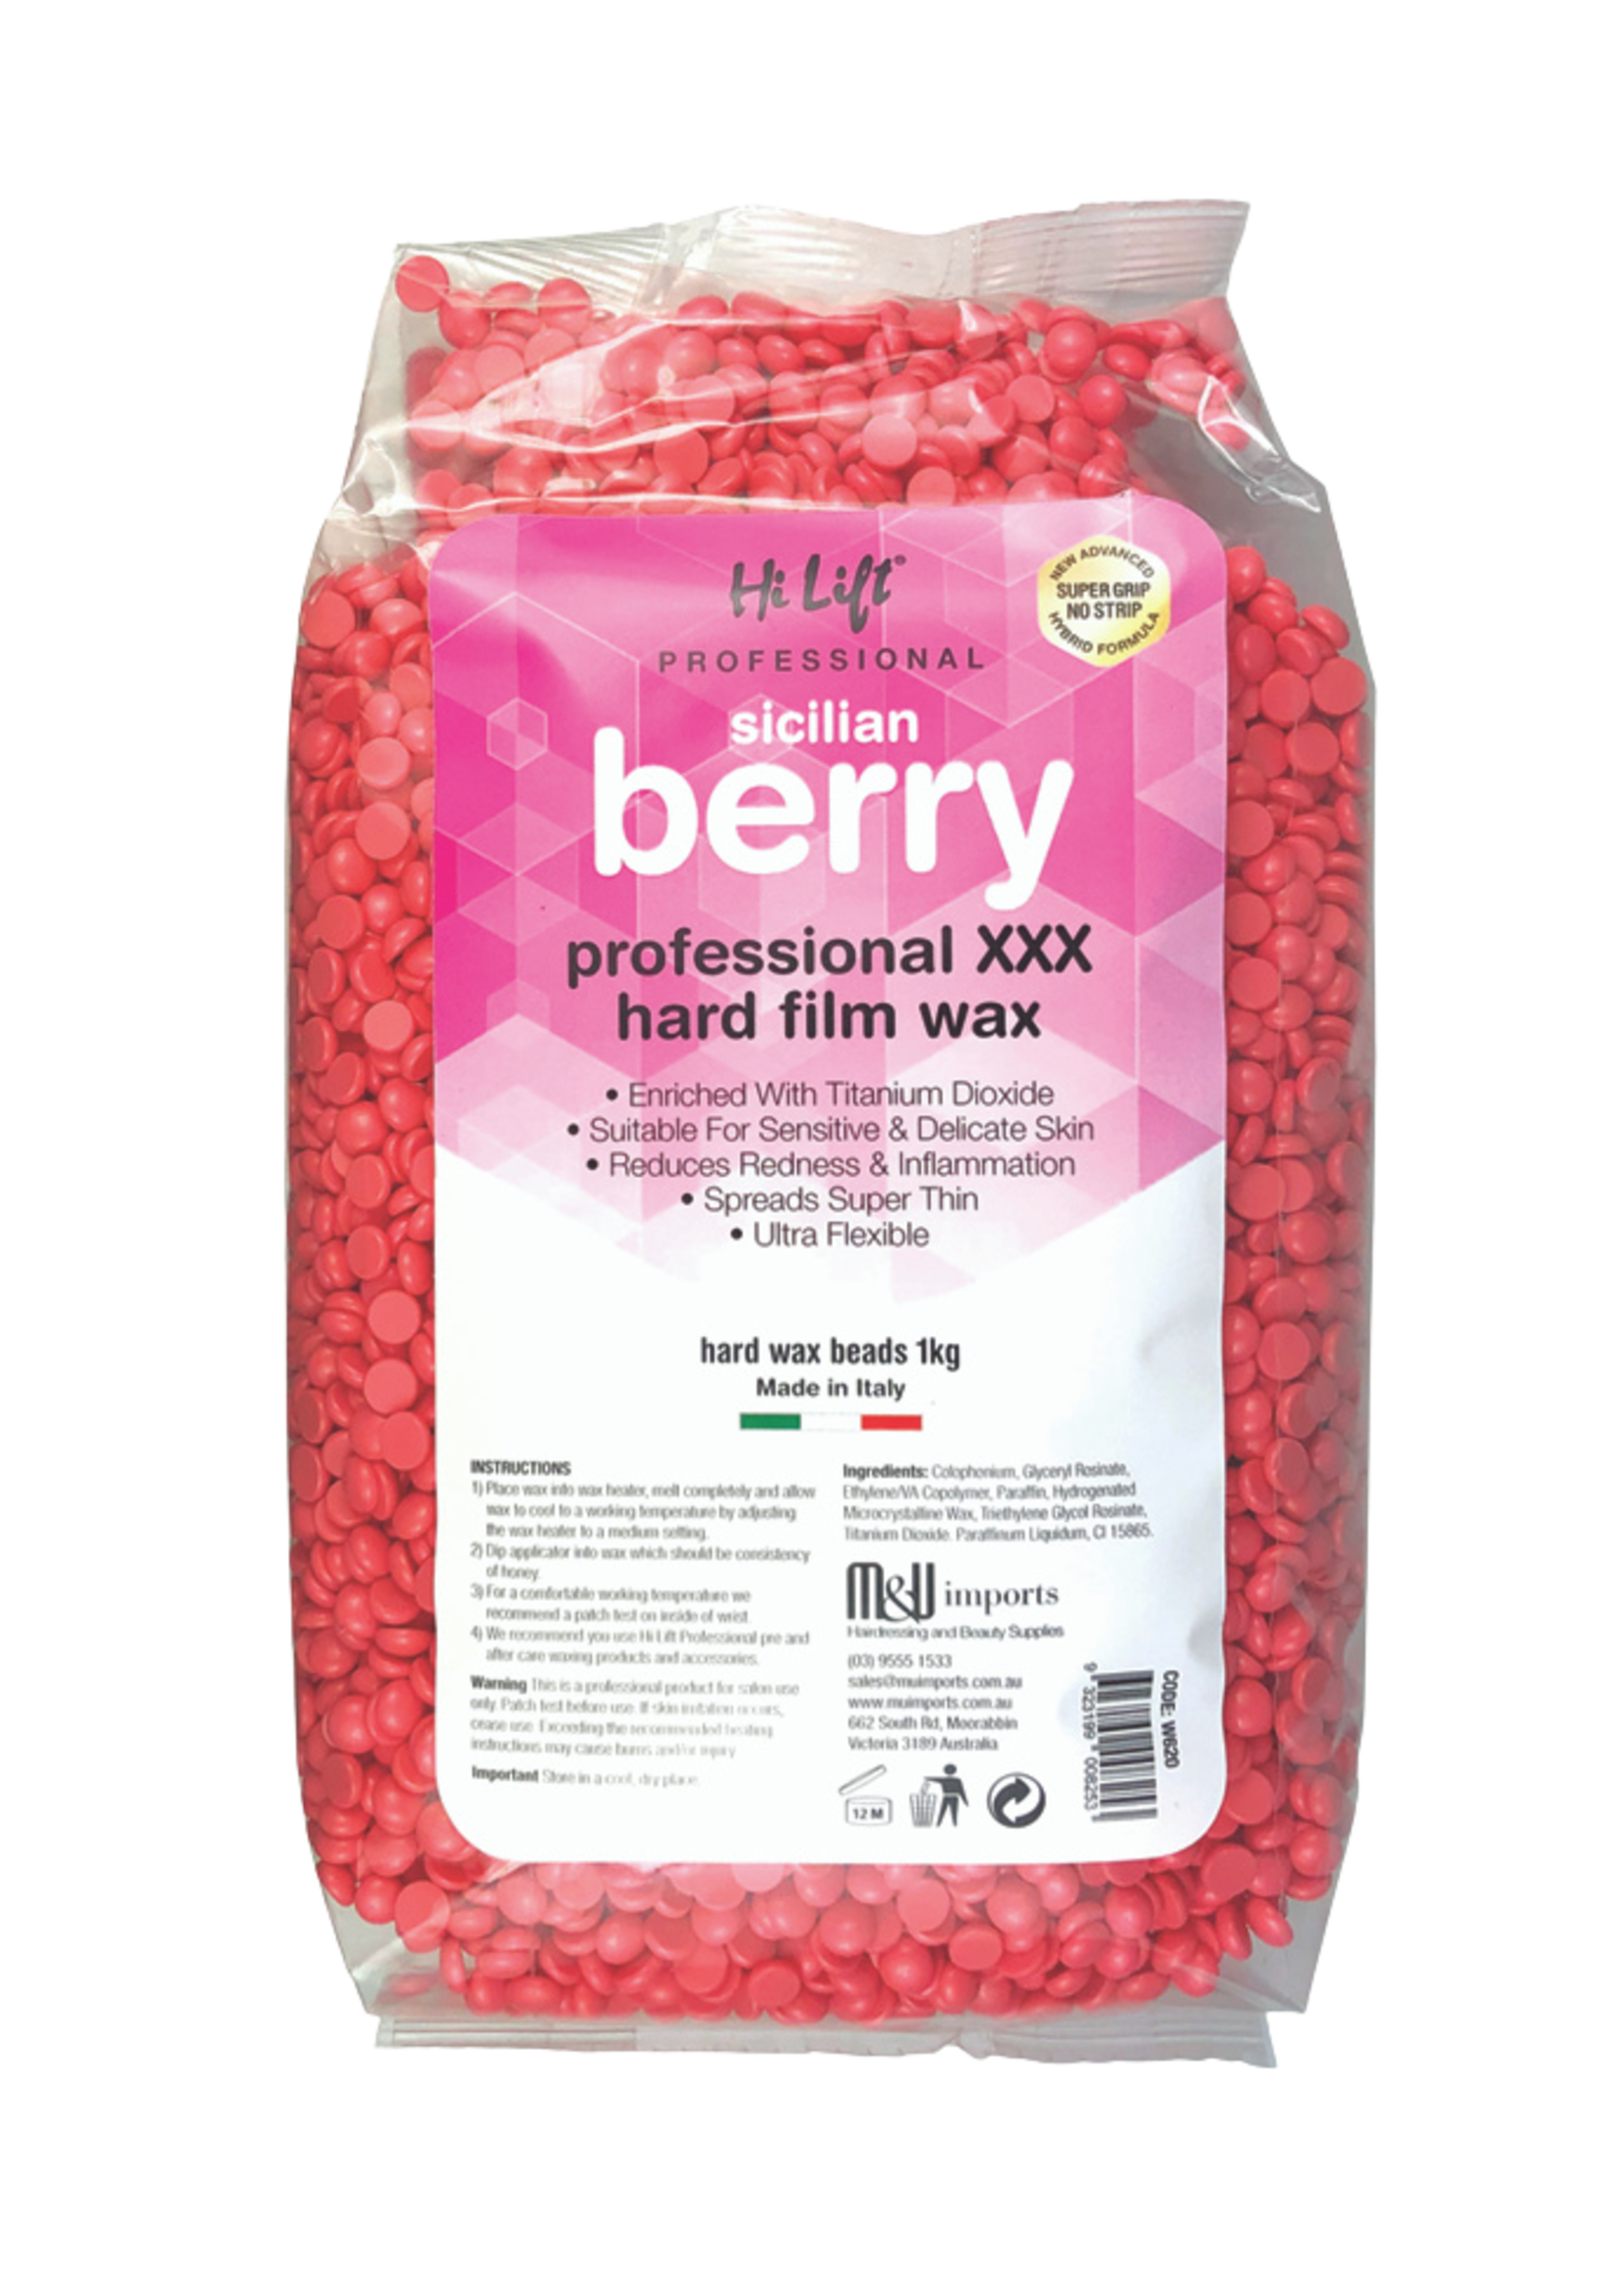 Hi Lift Hi Lift Hot Wax Beads 1Kg - Sicilian Berry